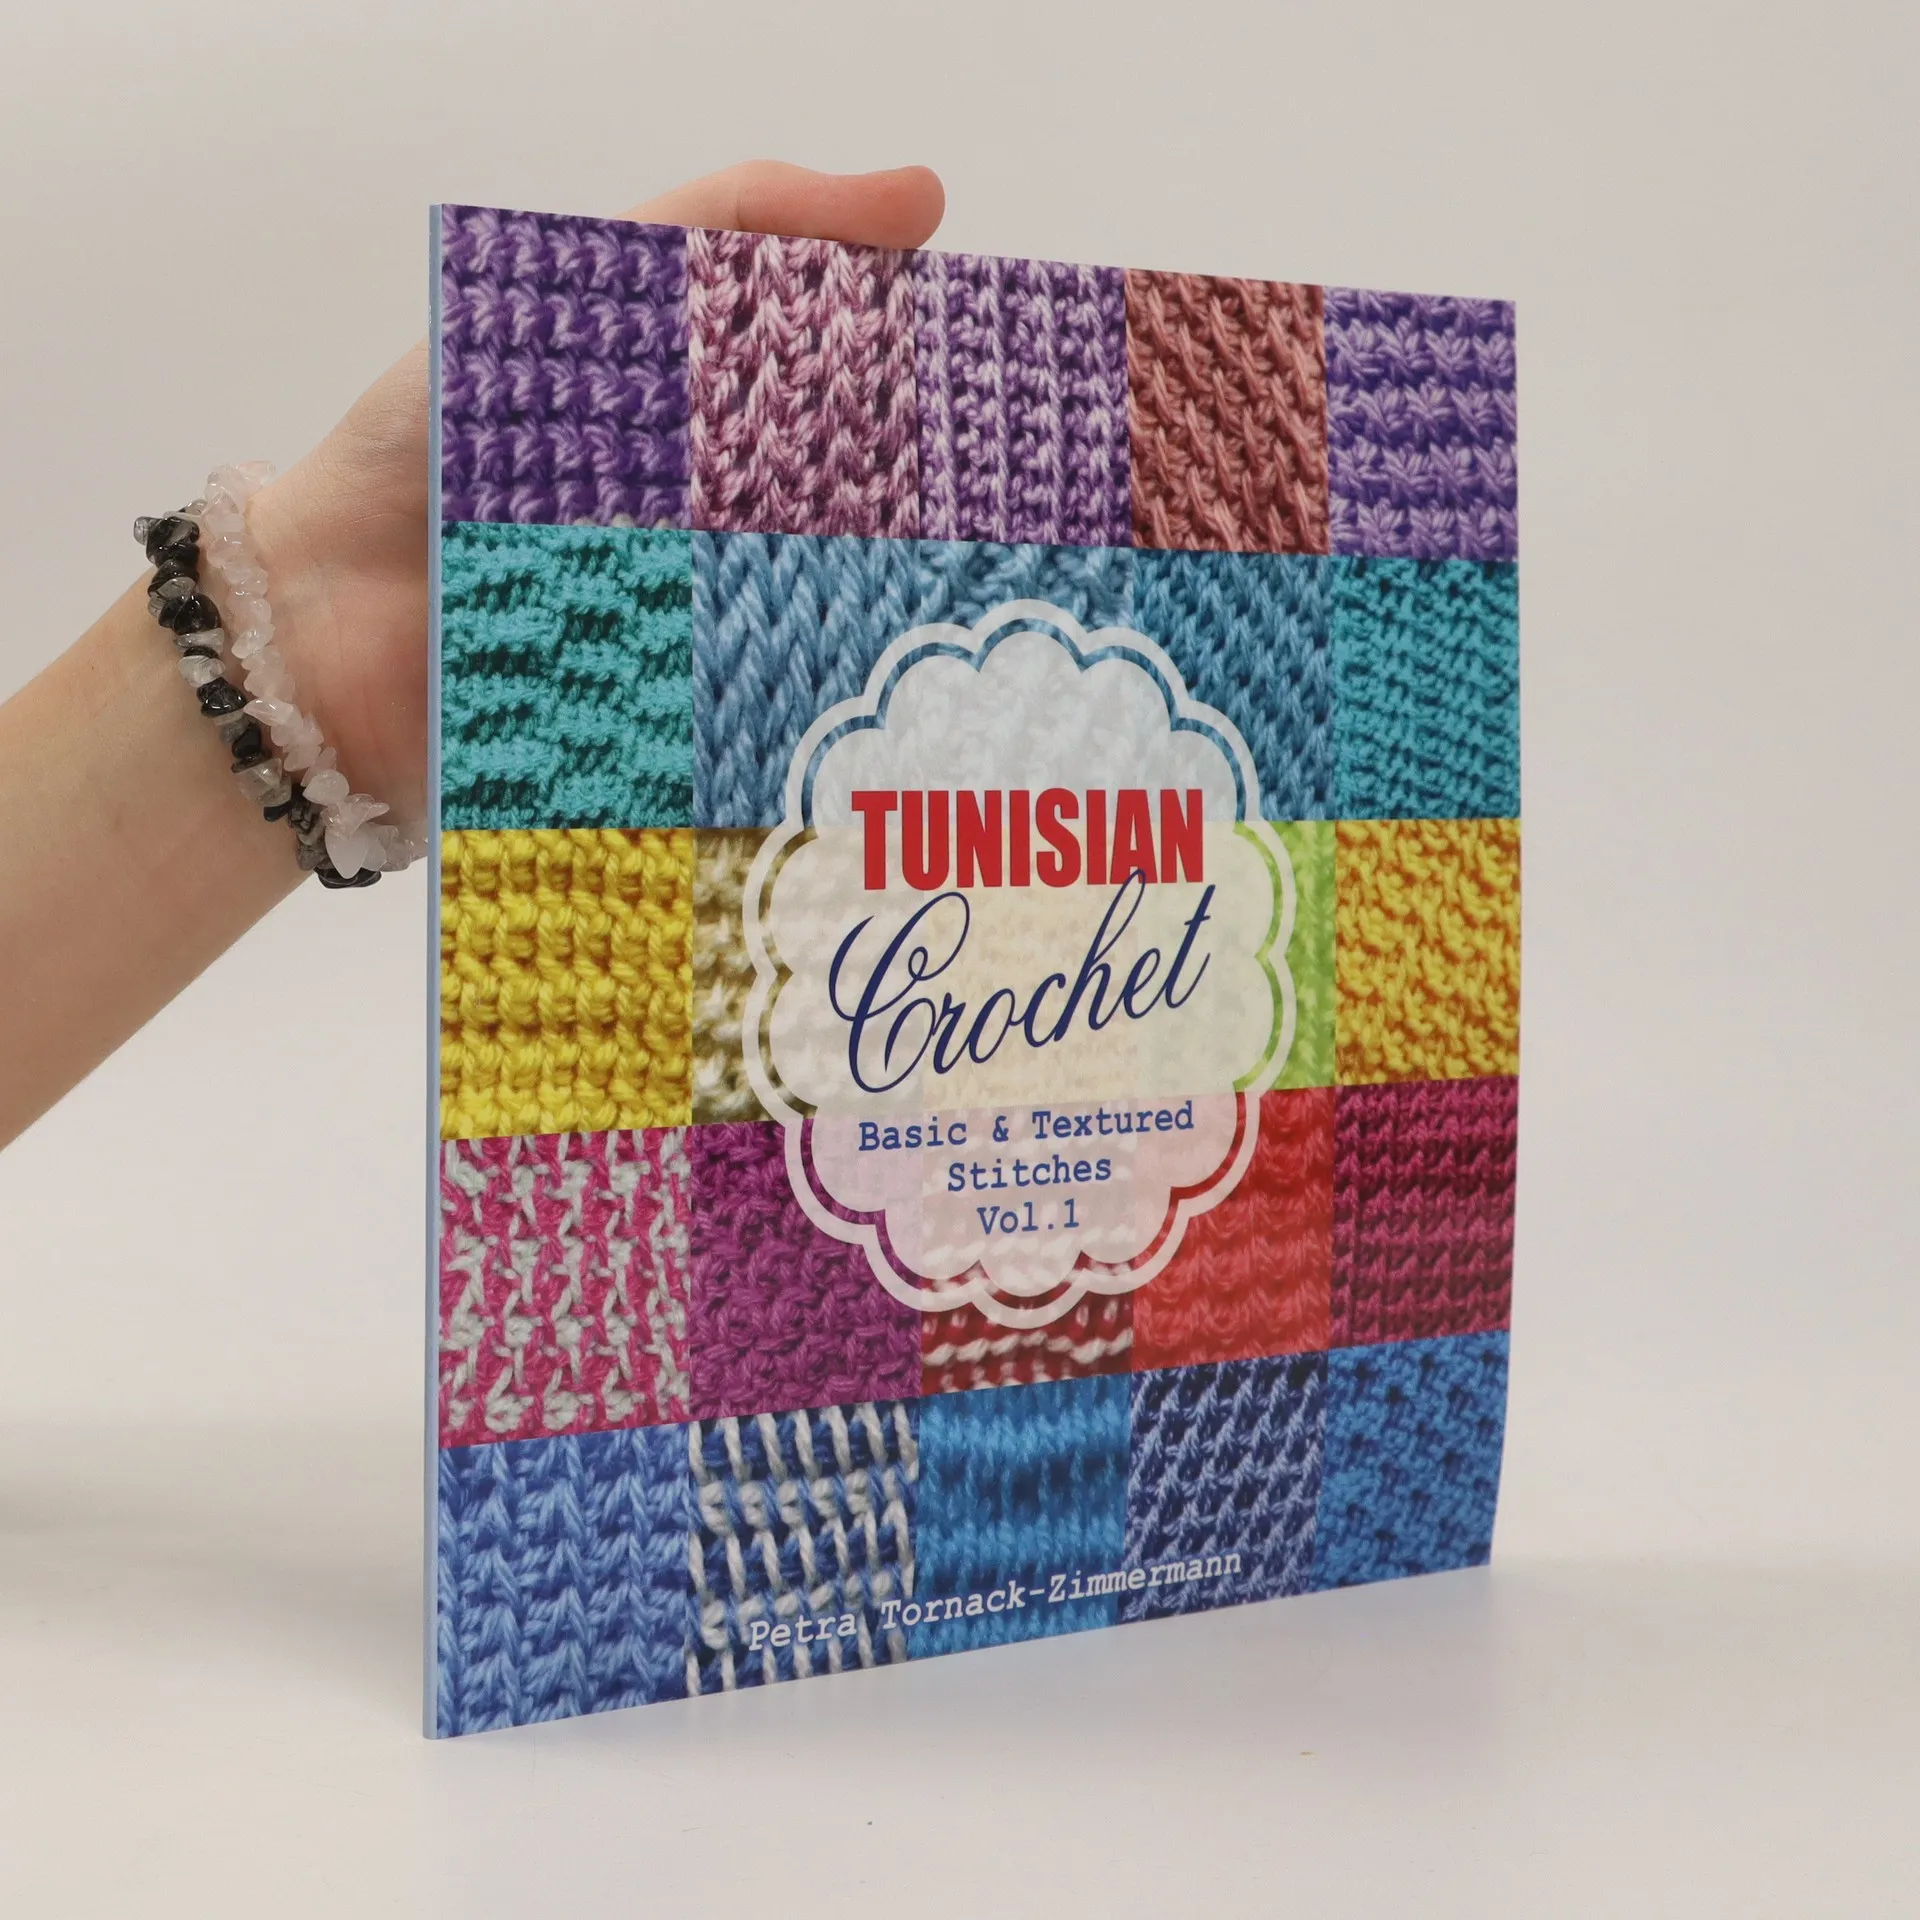 TUNISIAN Crochet - Vol. 1: Basic & Textured Stitches (TUNISIAN Crochet  Stitches): Tornack-Zimmermann, Petra: 9781539153900: : Books